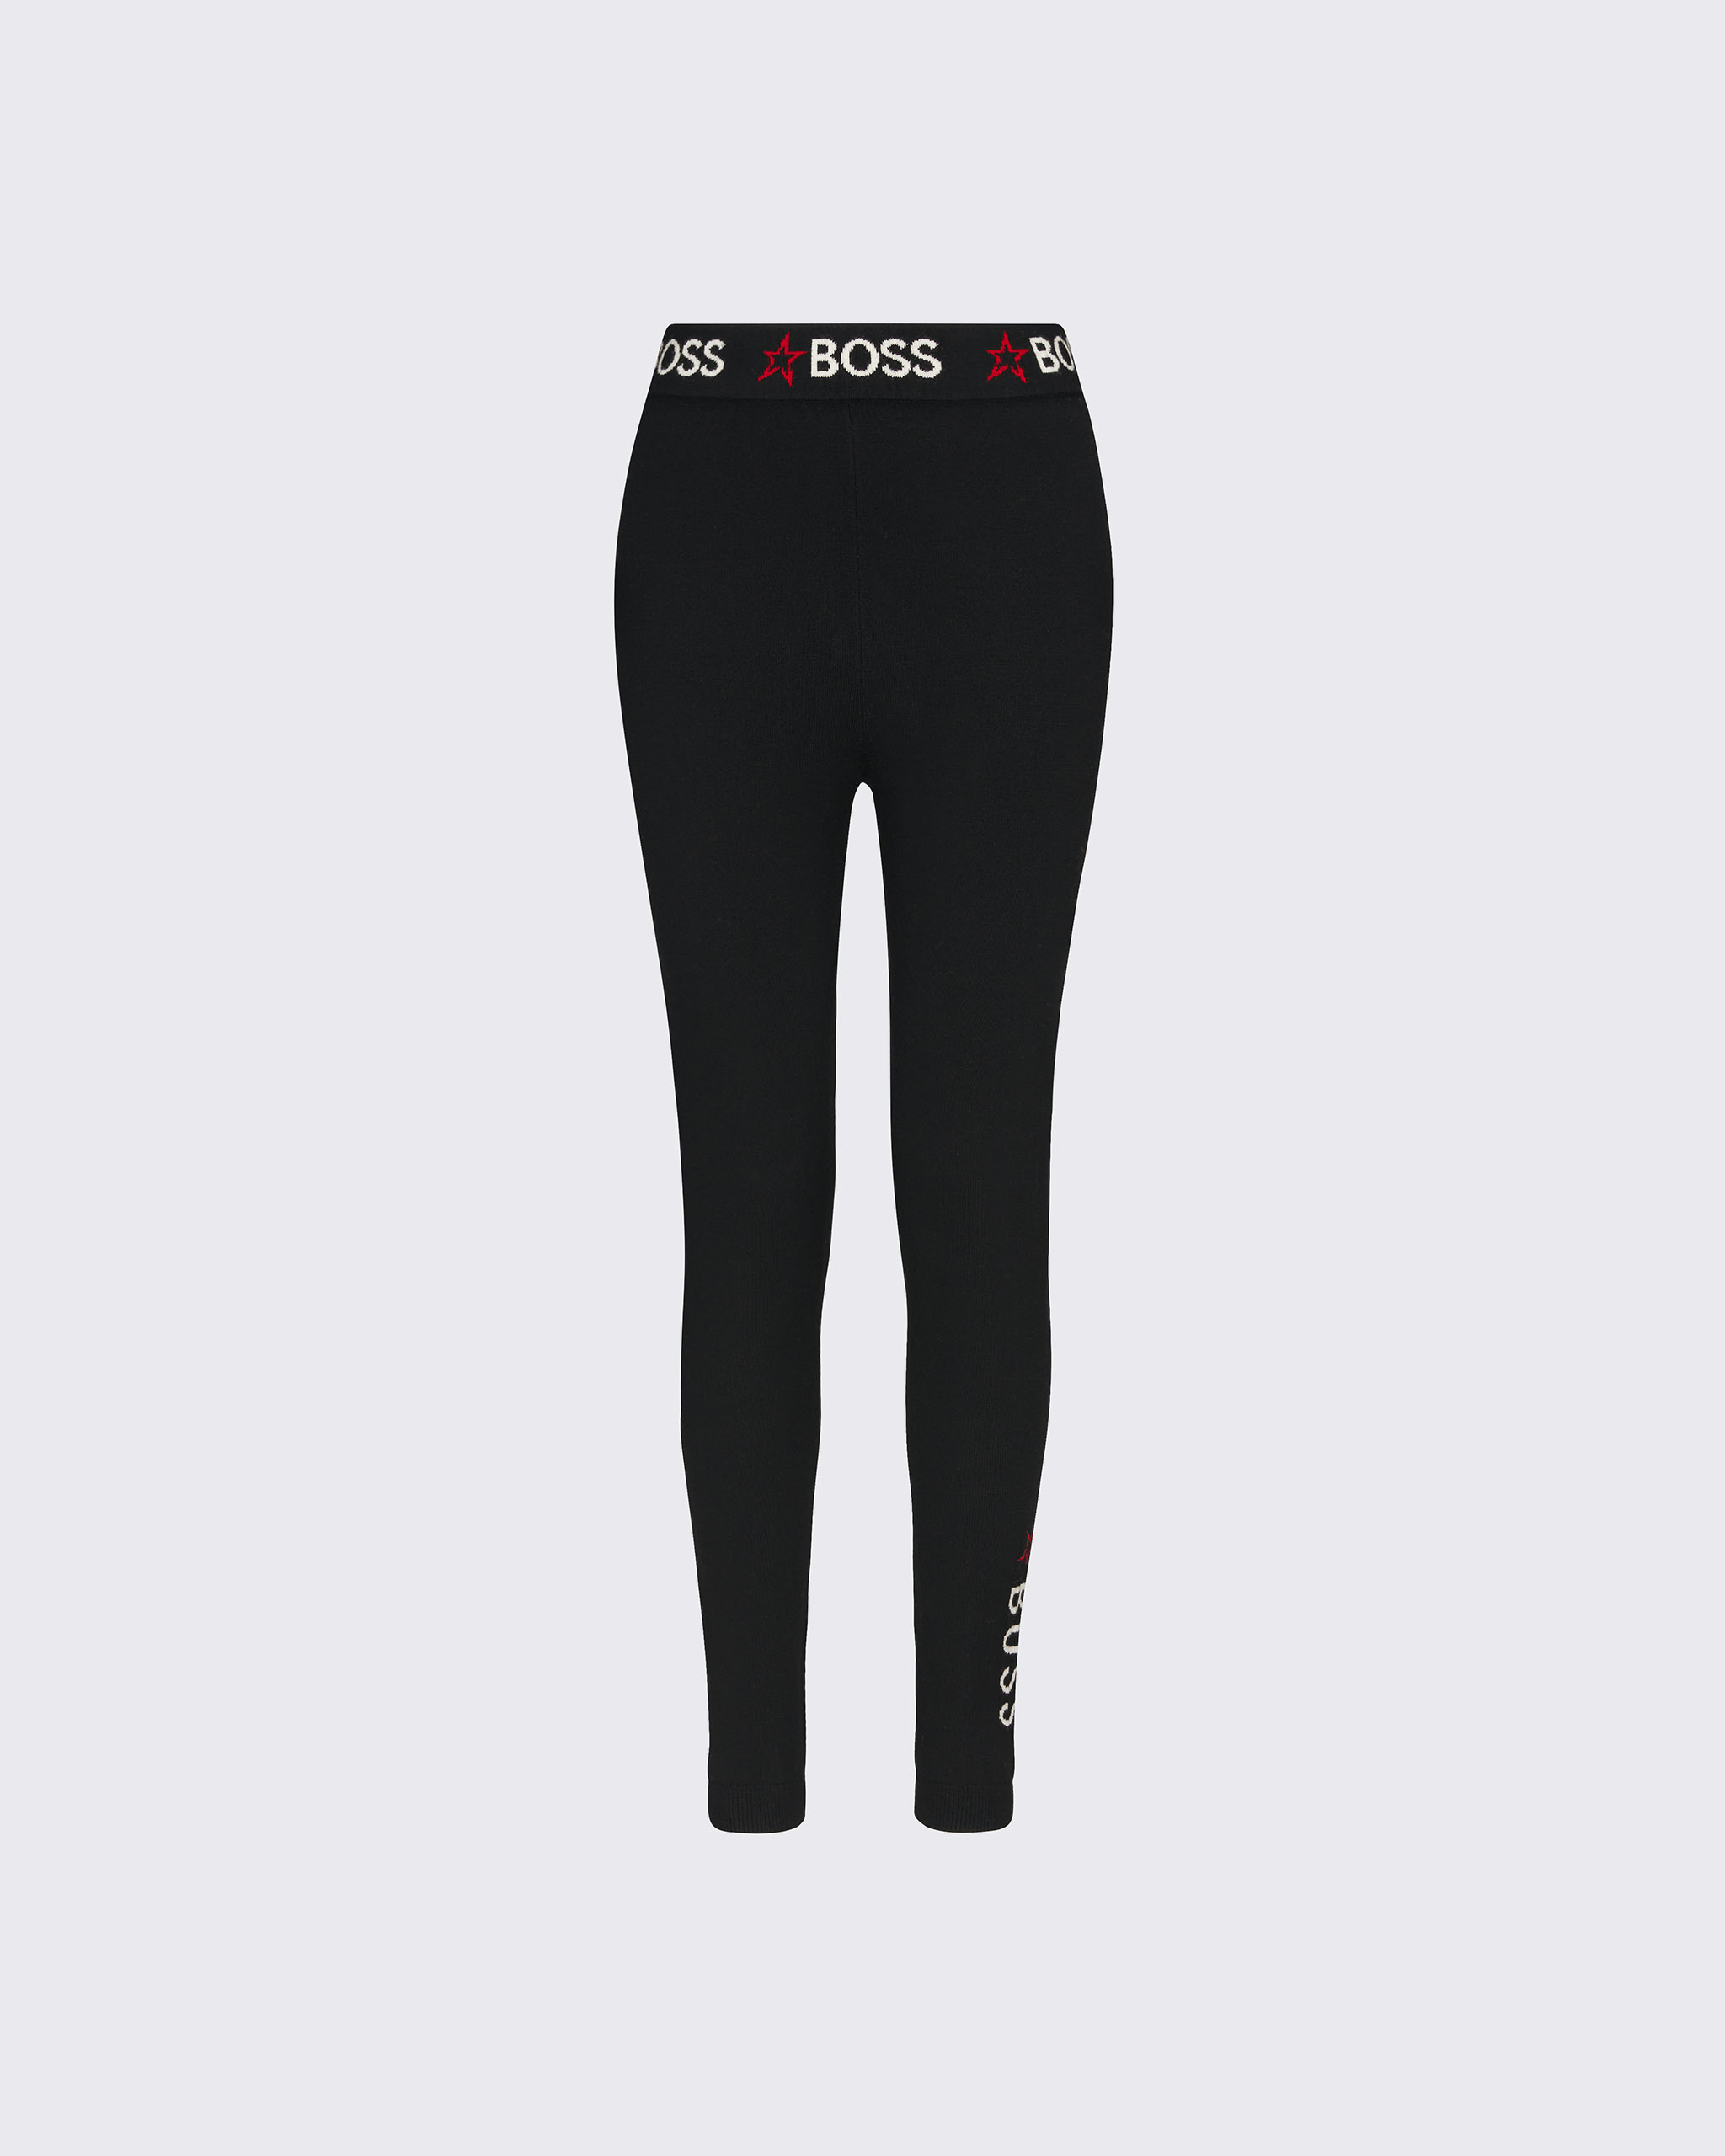 BOSS Logo Legging - Black